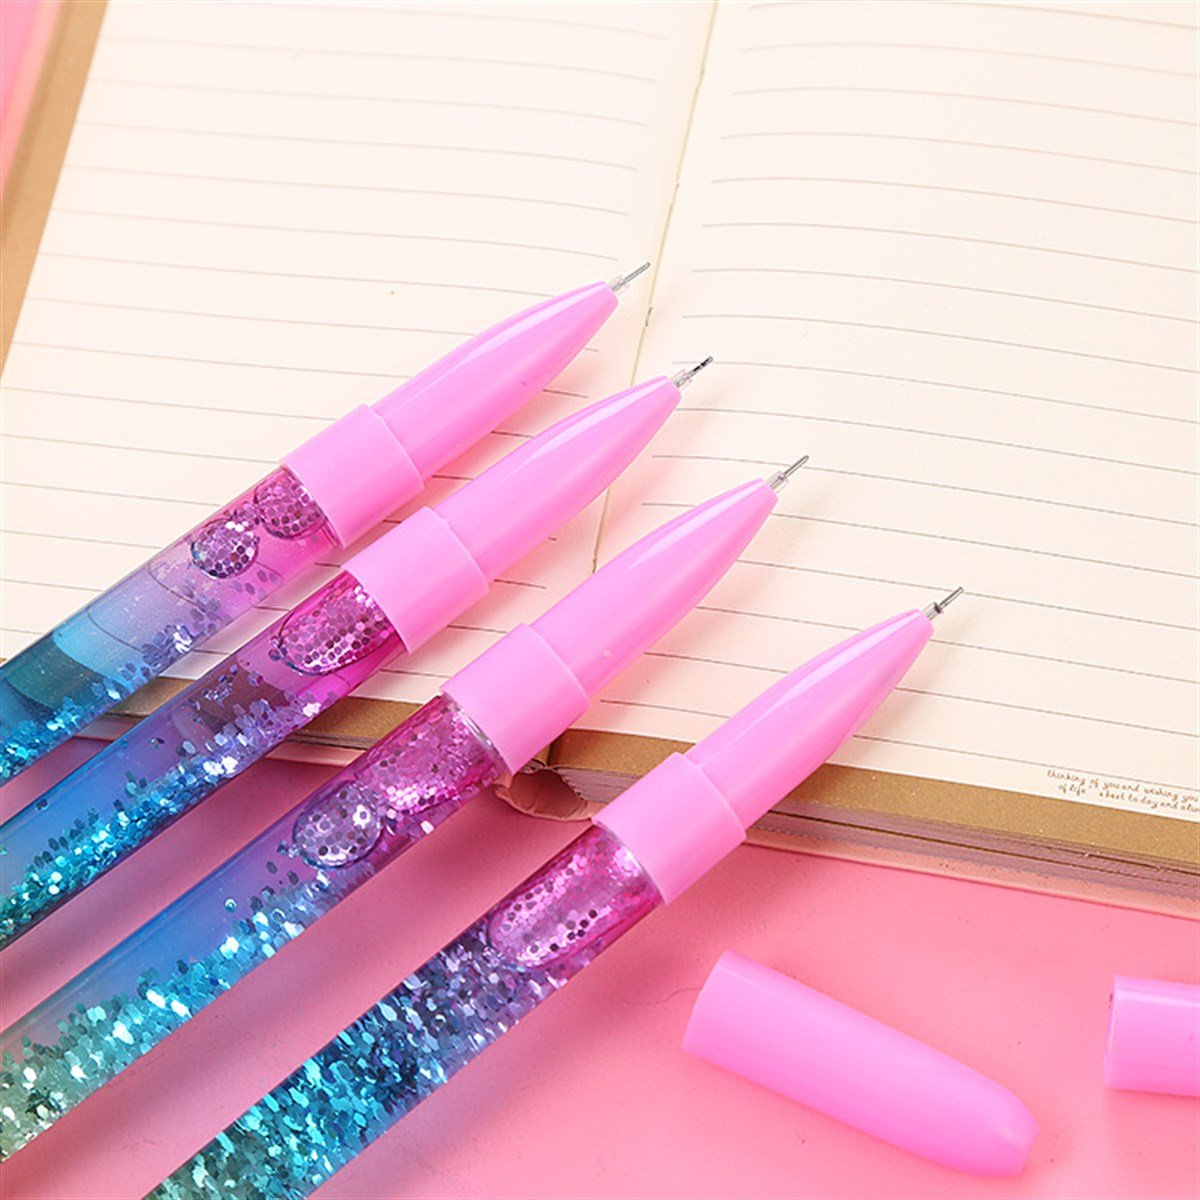 Cilgintrend.com'da Unicorn Temalı Işıklı Sulu Pullu Kalem​ Şimdi Satışta!  Eğlenceli tasarımı ve kaliteli malzemesiyle dikkat çeken bu kalem,  çocukların favorisi olmaya aday. Hemen sipariş verin!"